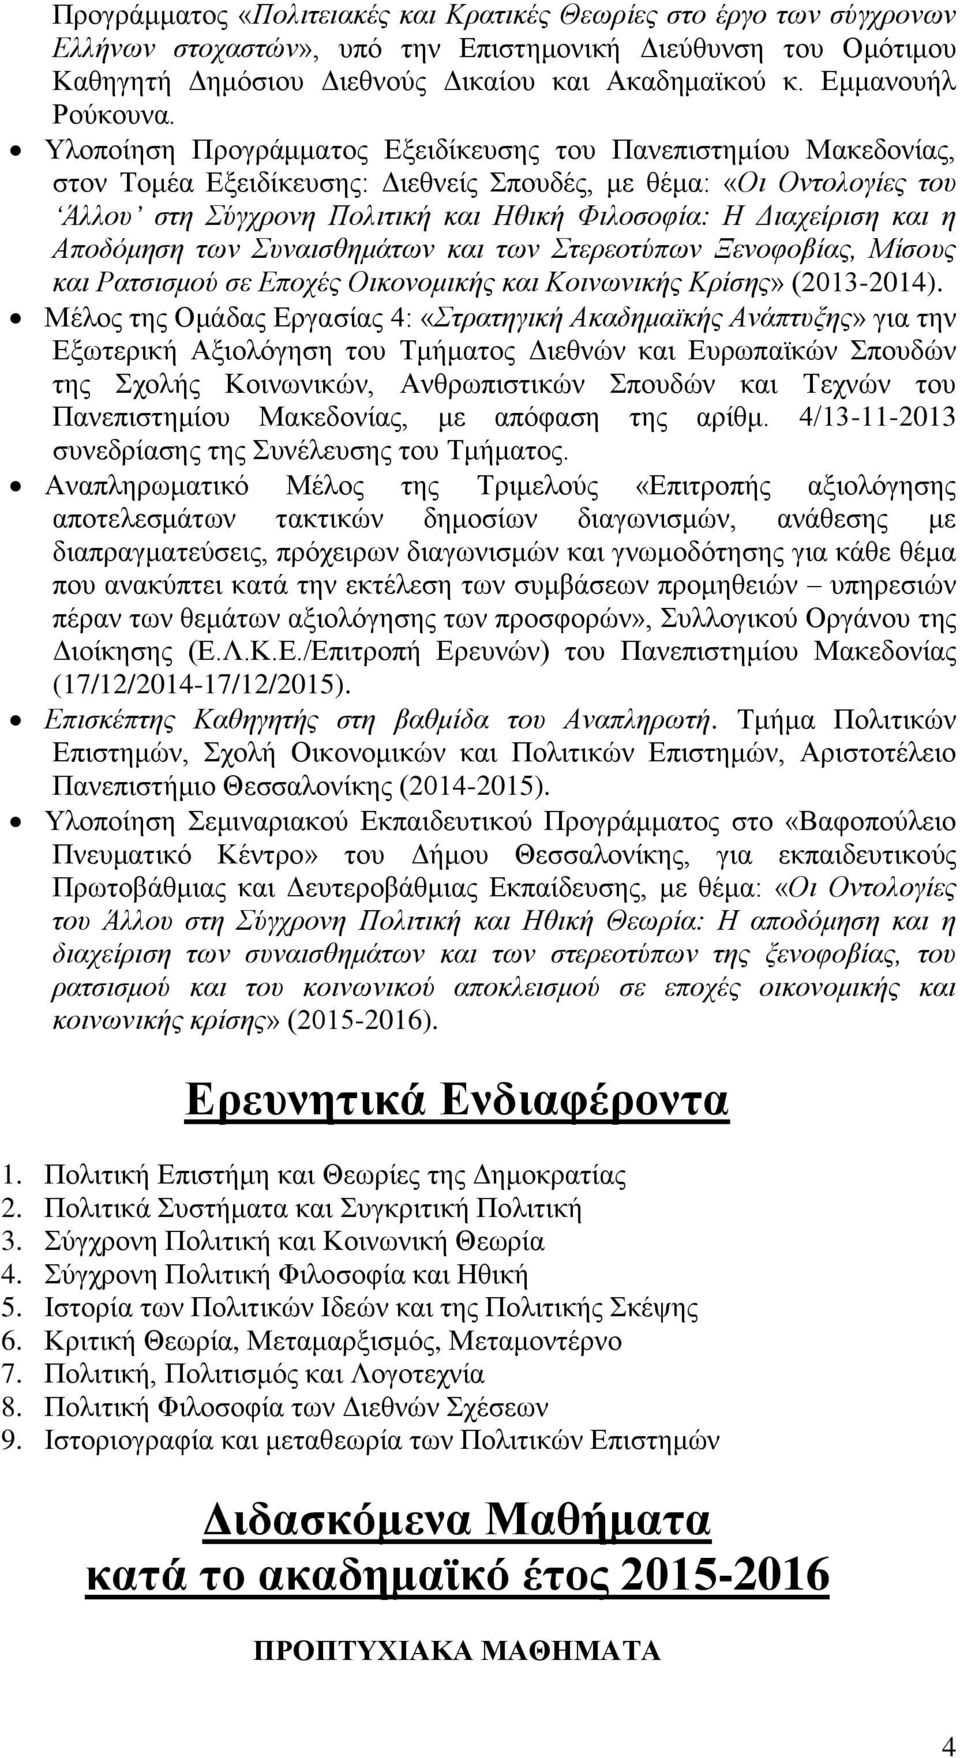 Υλοποίηση Προγράμματος Εξειδίκευσης του Πανεπιστημίου Μακεδονίας, στον Τομέα Εξειδίκευσης: Διεθνείς Σπουδές, με θέμα: «Οι Οντολογίες του Άλλου στη Σύγχρονη Πολιτική και Ηθική Φιλοσοφία: Η Διαχείριση